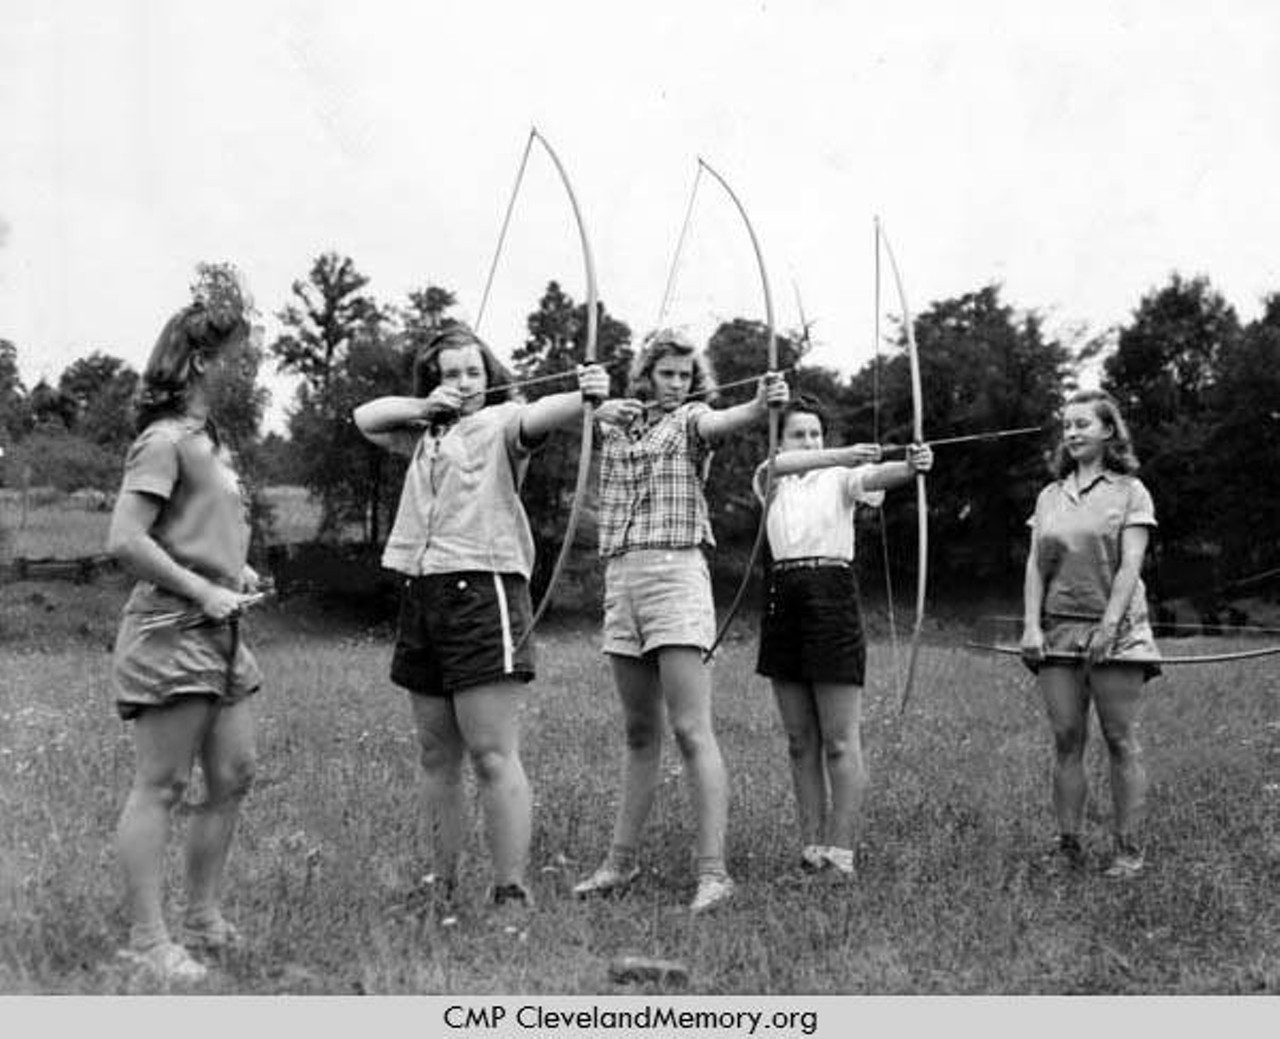  Archery, 1941 